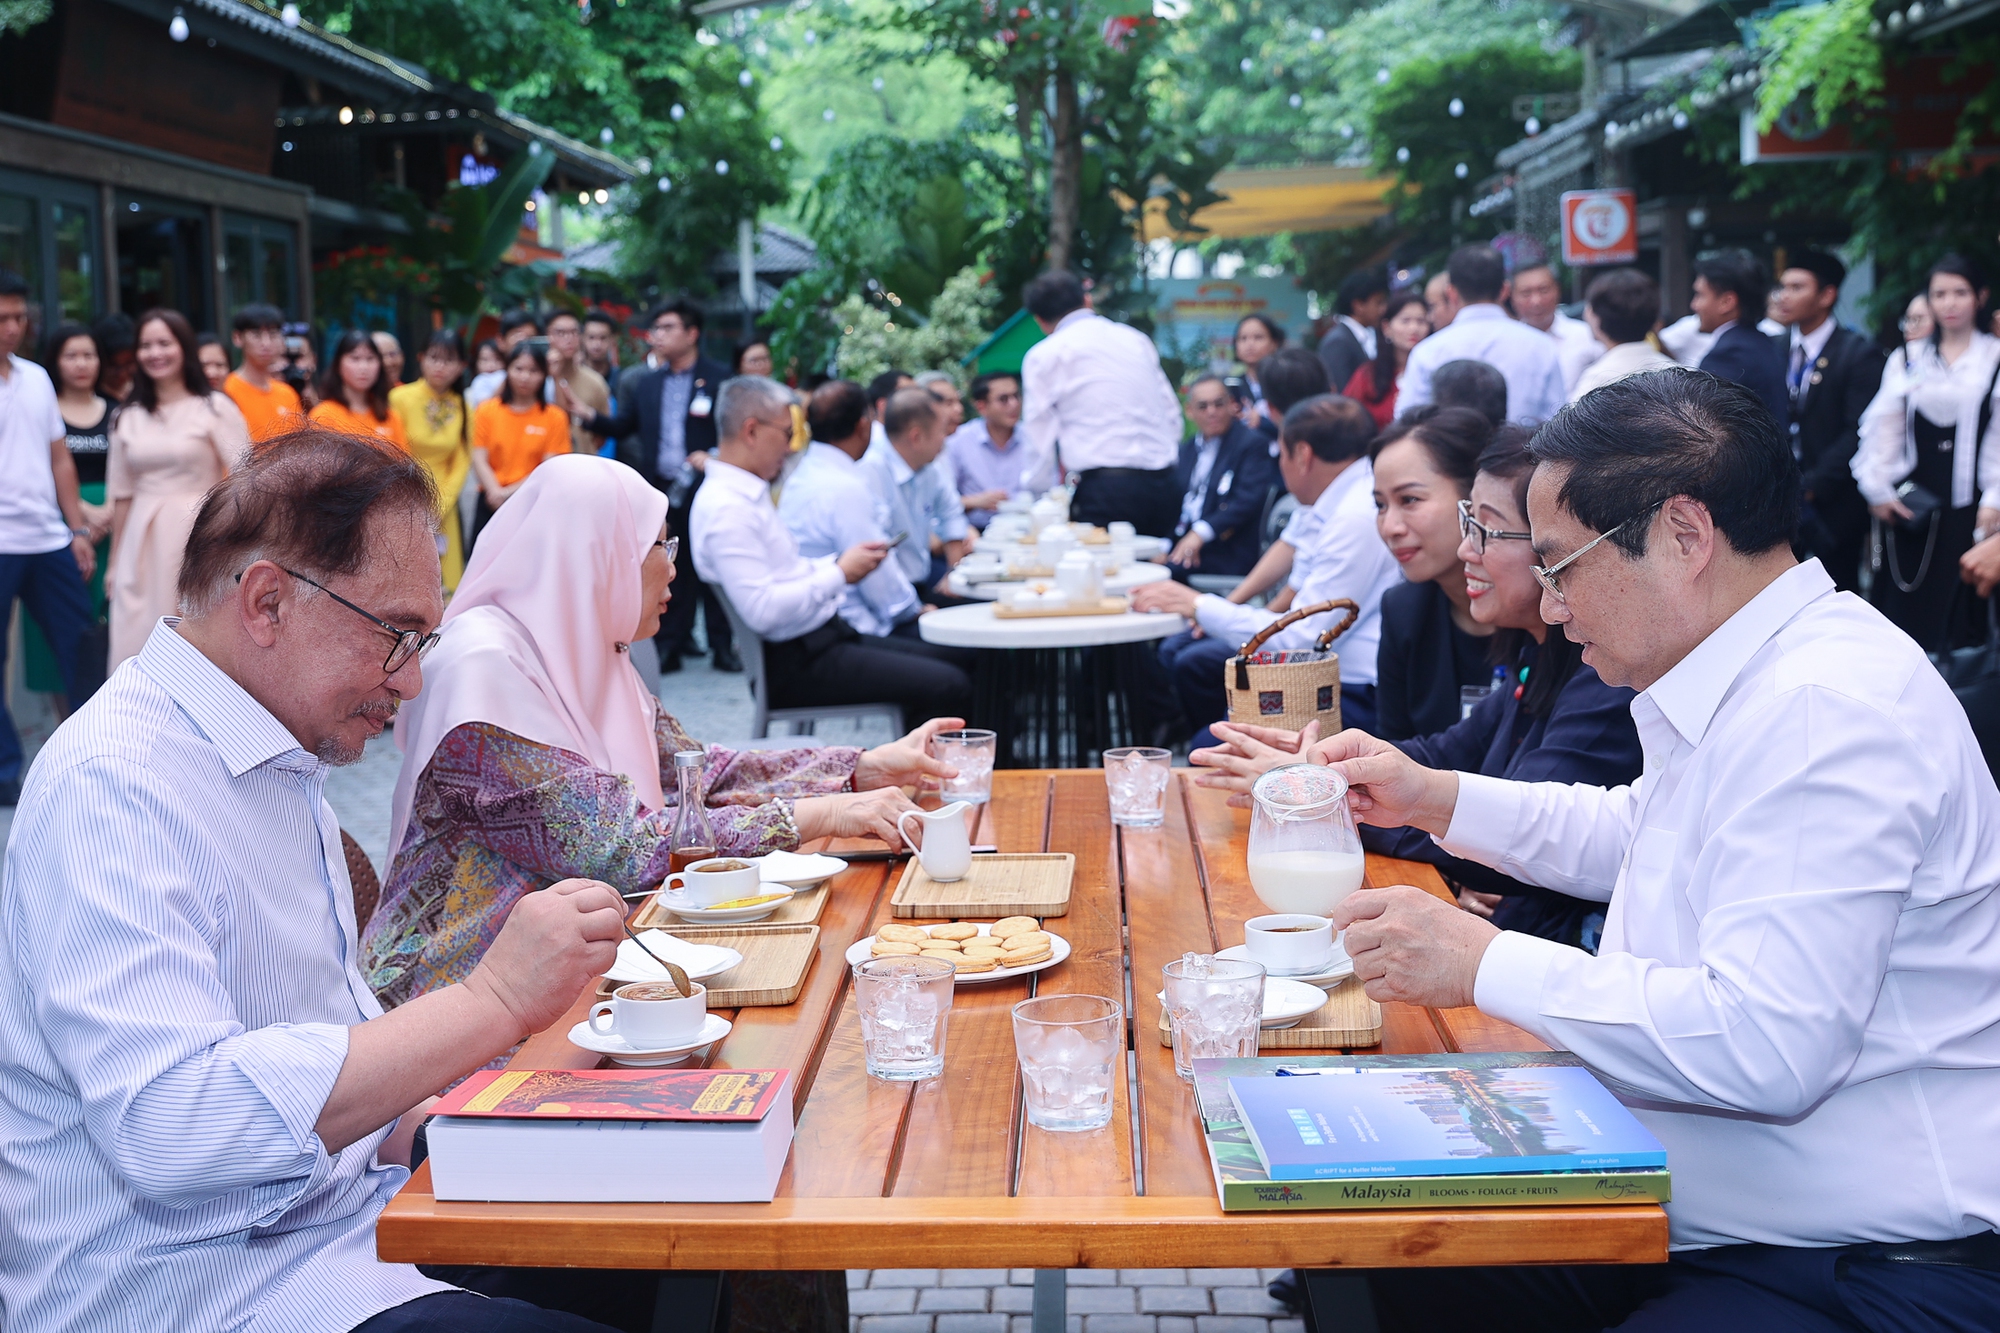 Chùm ảnh: Thủ tướng Phạm Minh Chính cùng Thủ tướng Malaysia thăm phố sách Hà Nội và thưởng thức cà phê Việt Nam - Ảnh 8.